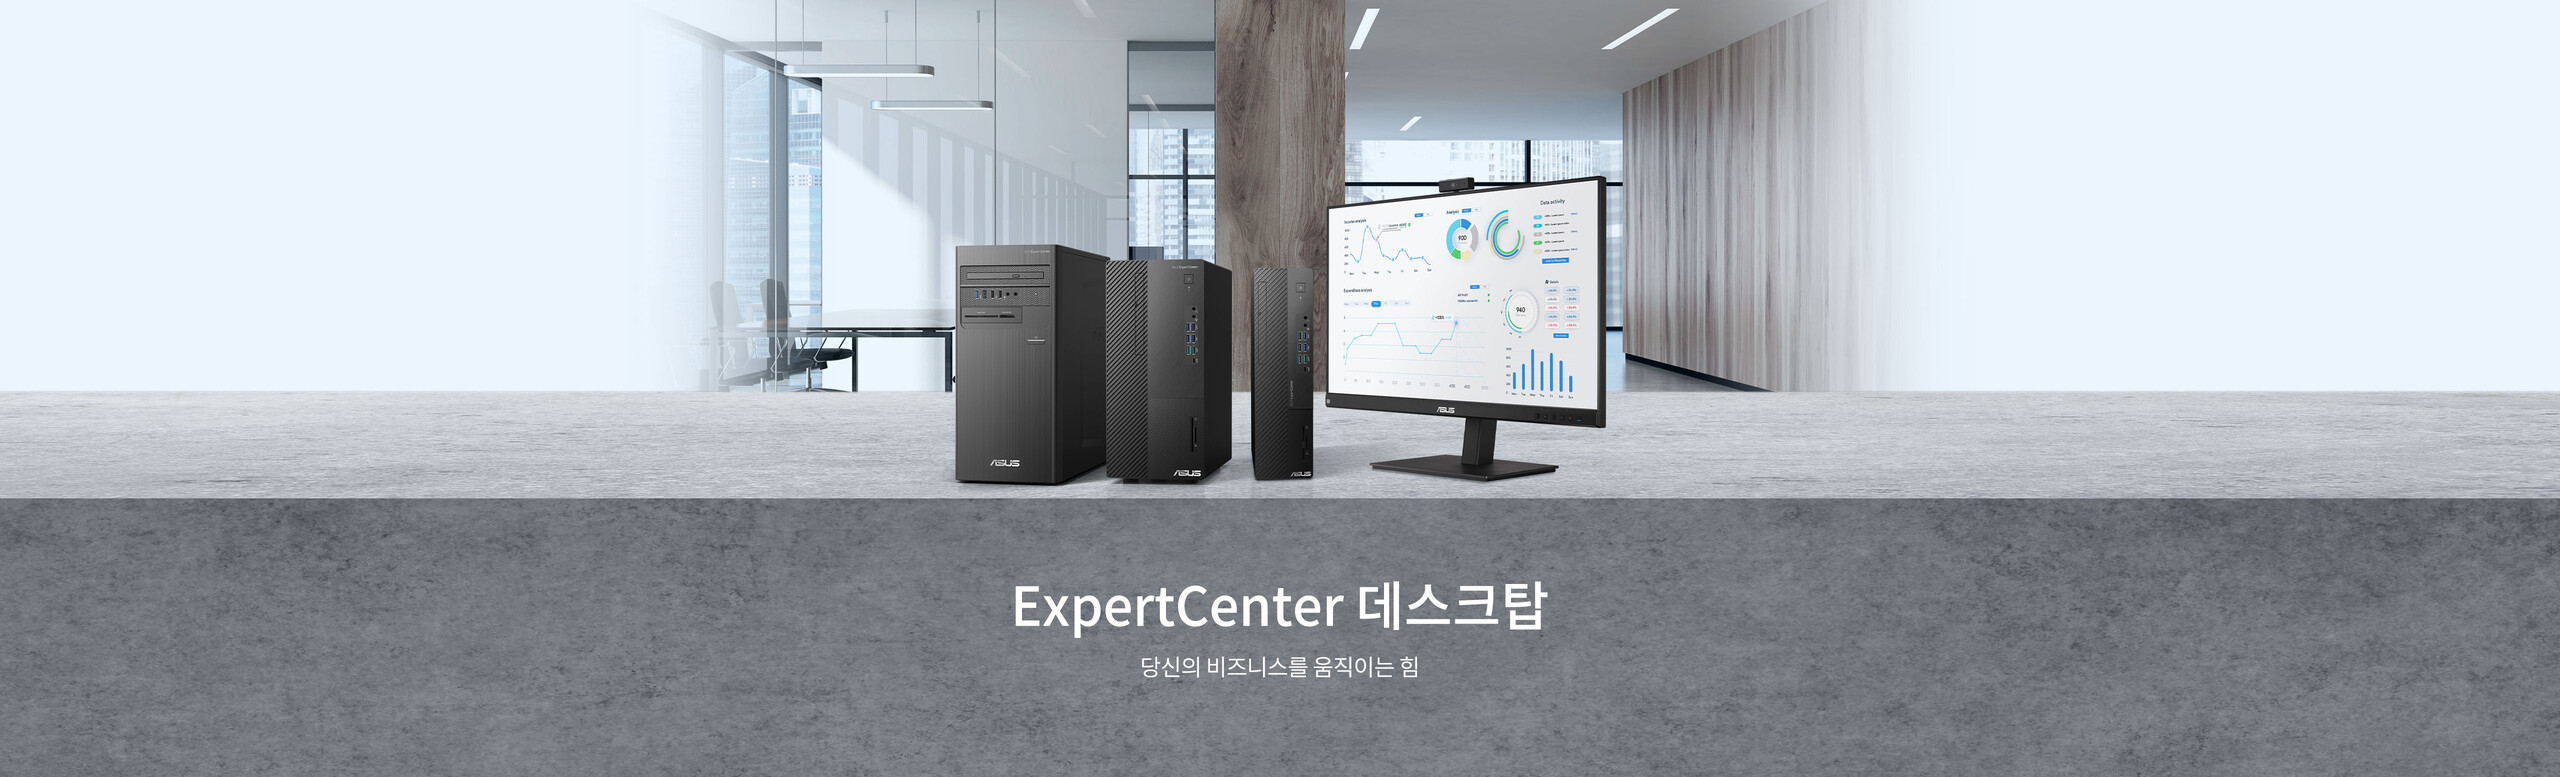 ExpertCenter desktops